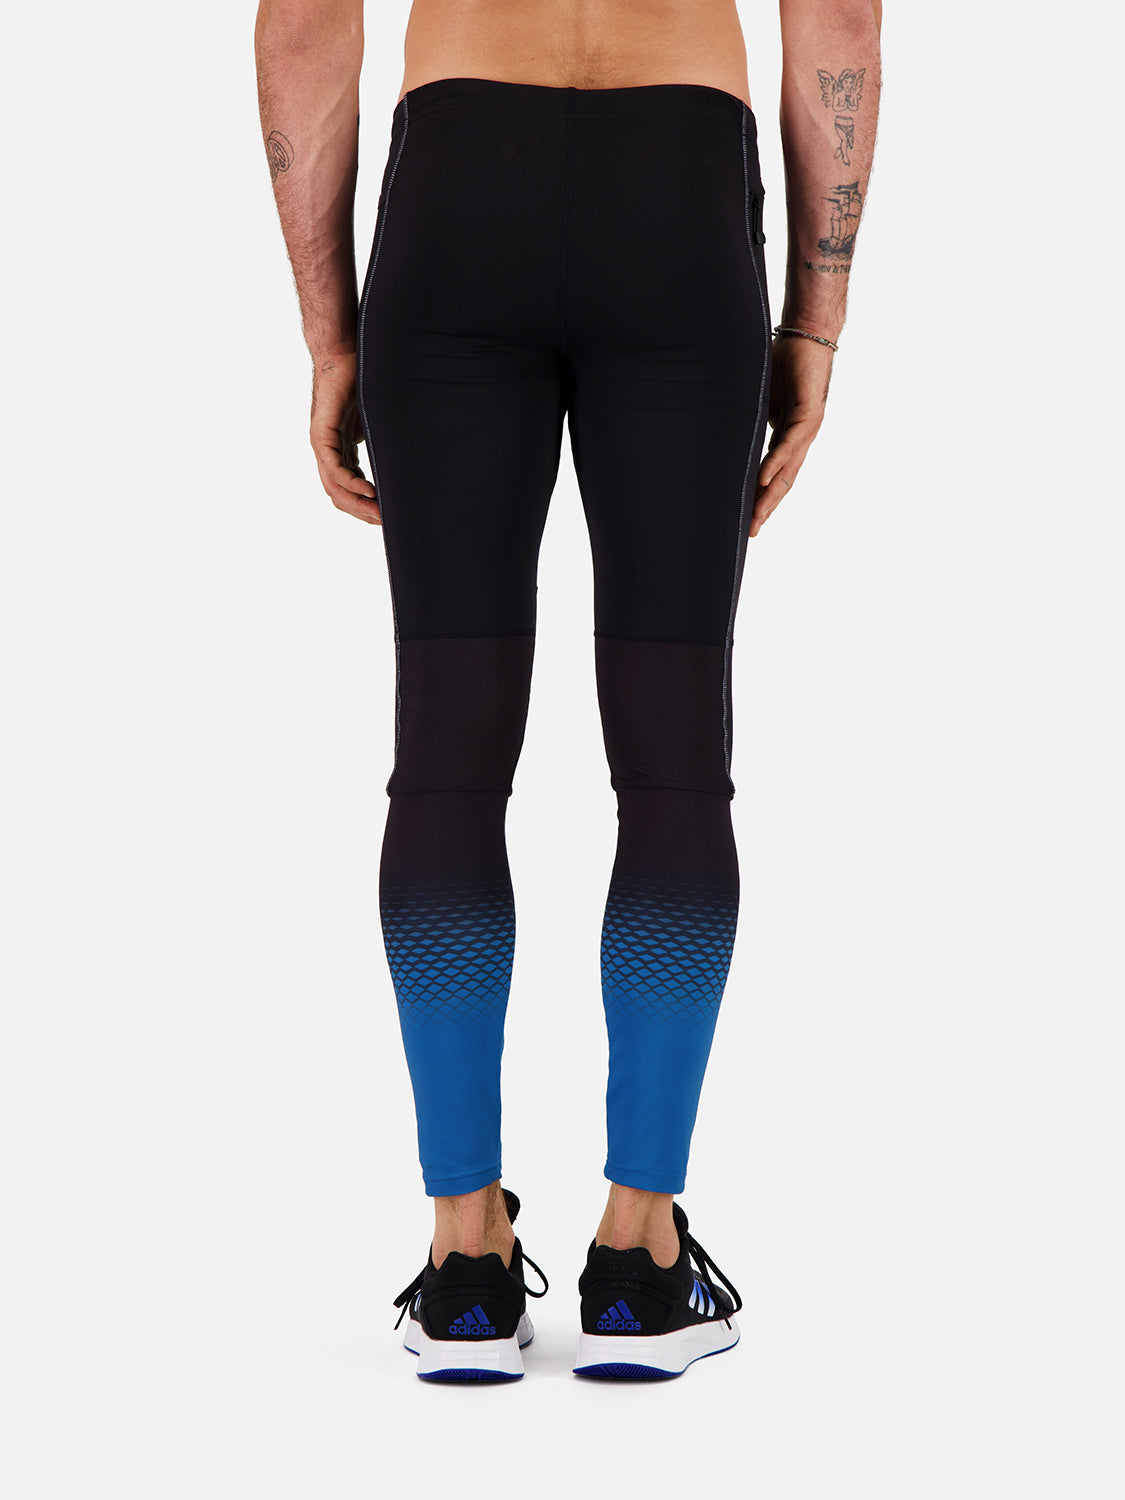 Bobby men's running leggings black – Bodycross